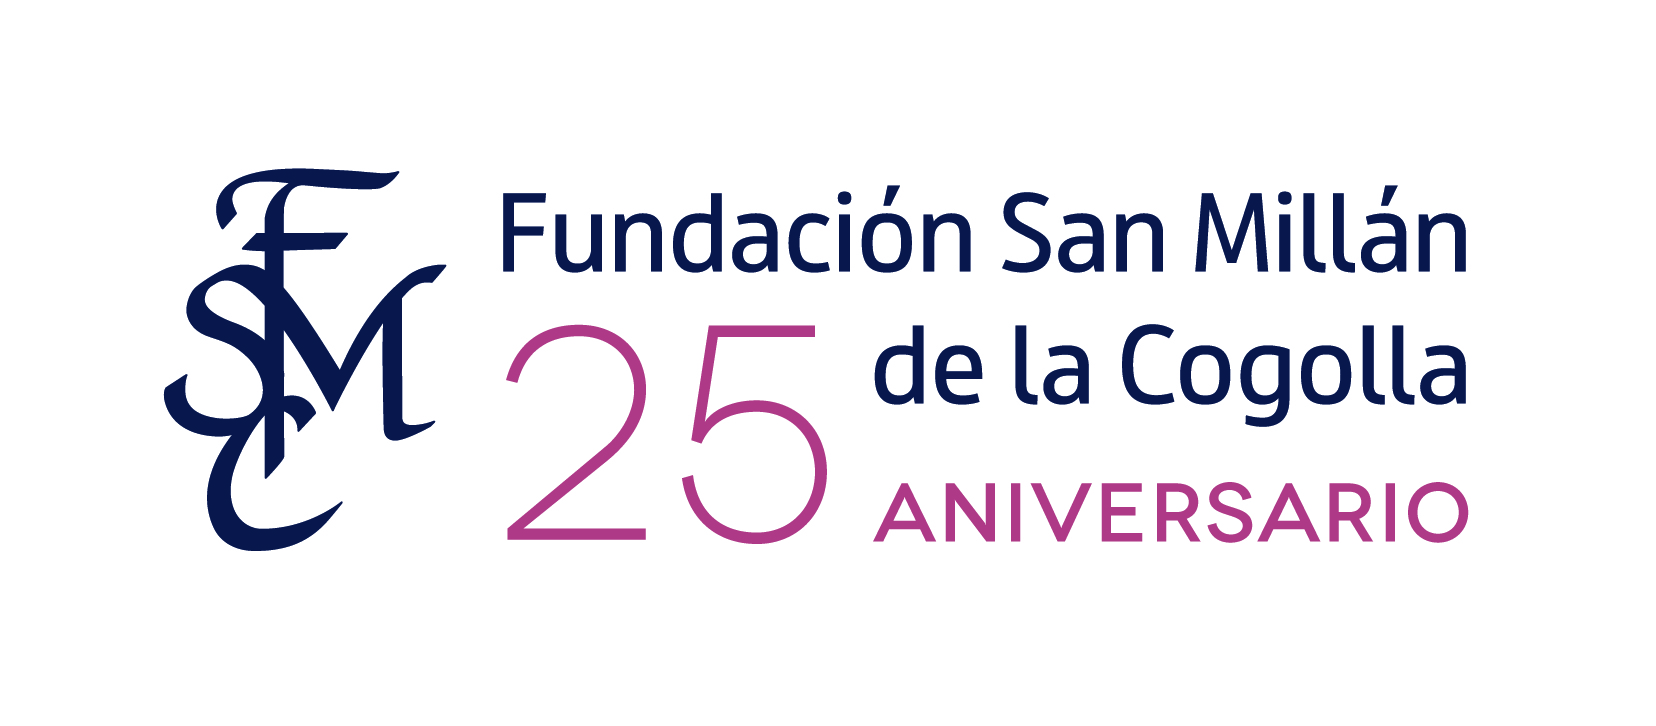 Fundación San Millán de la Cogolla 25 aniversario